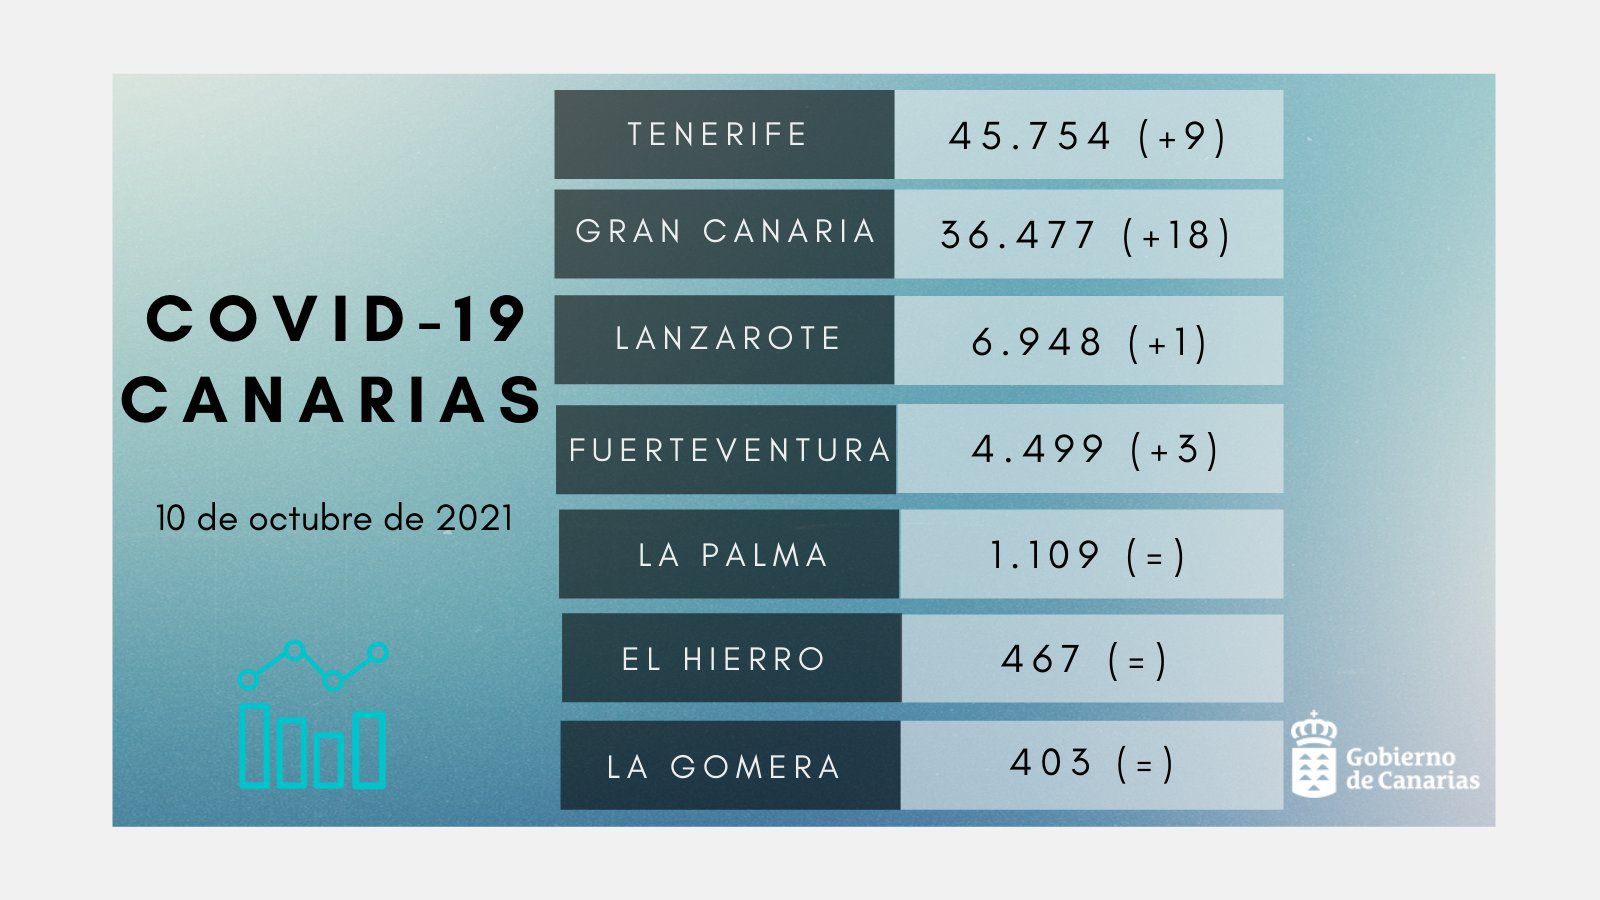 31 nuevos contagios en las últimas 24 horas y 1 fallecida de 71 años en La Palma